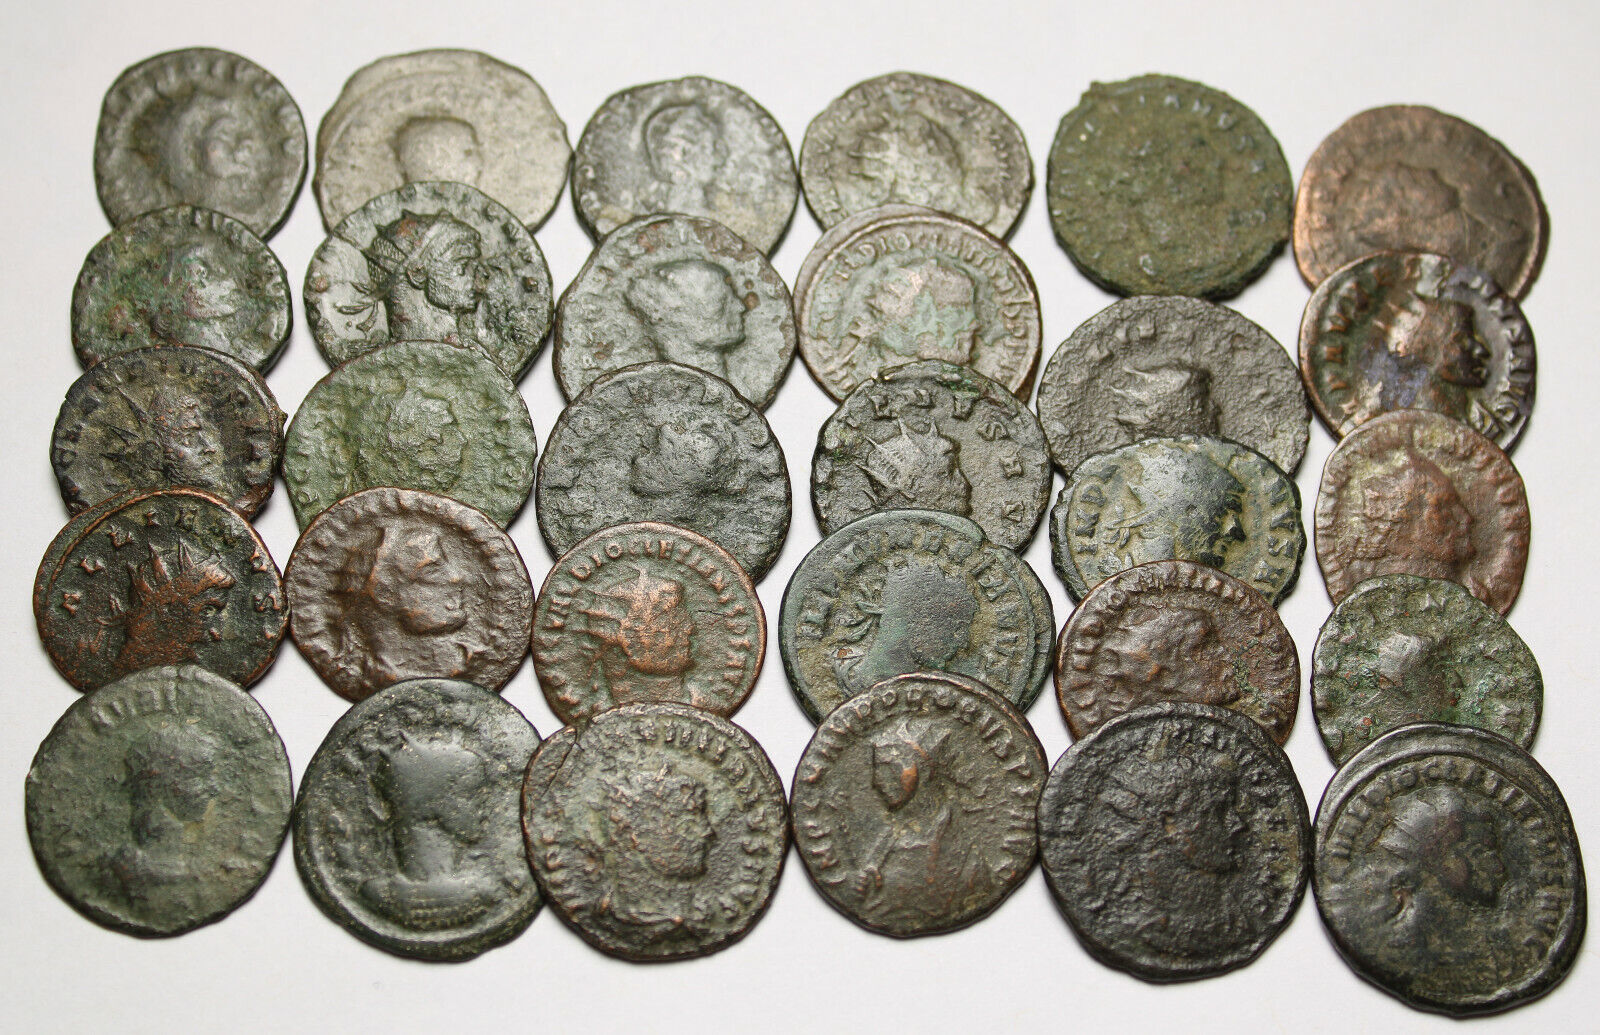 Lot of 3 Rare original Ancient Roman Antoninianus coins Probus Aurelian Claudius Без бренда - фотография #5